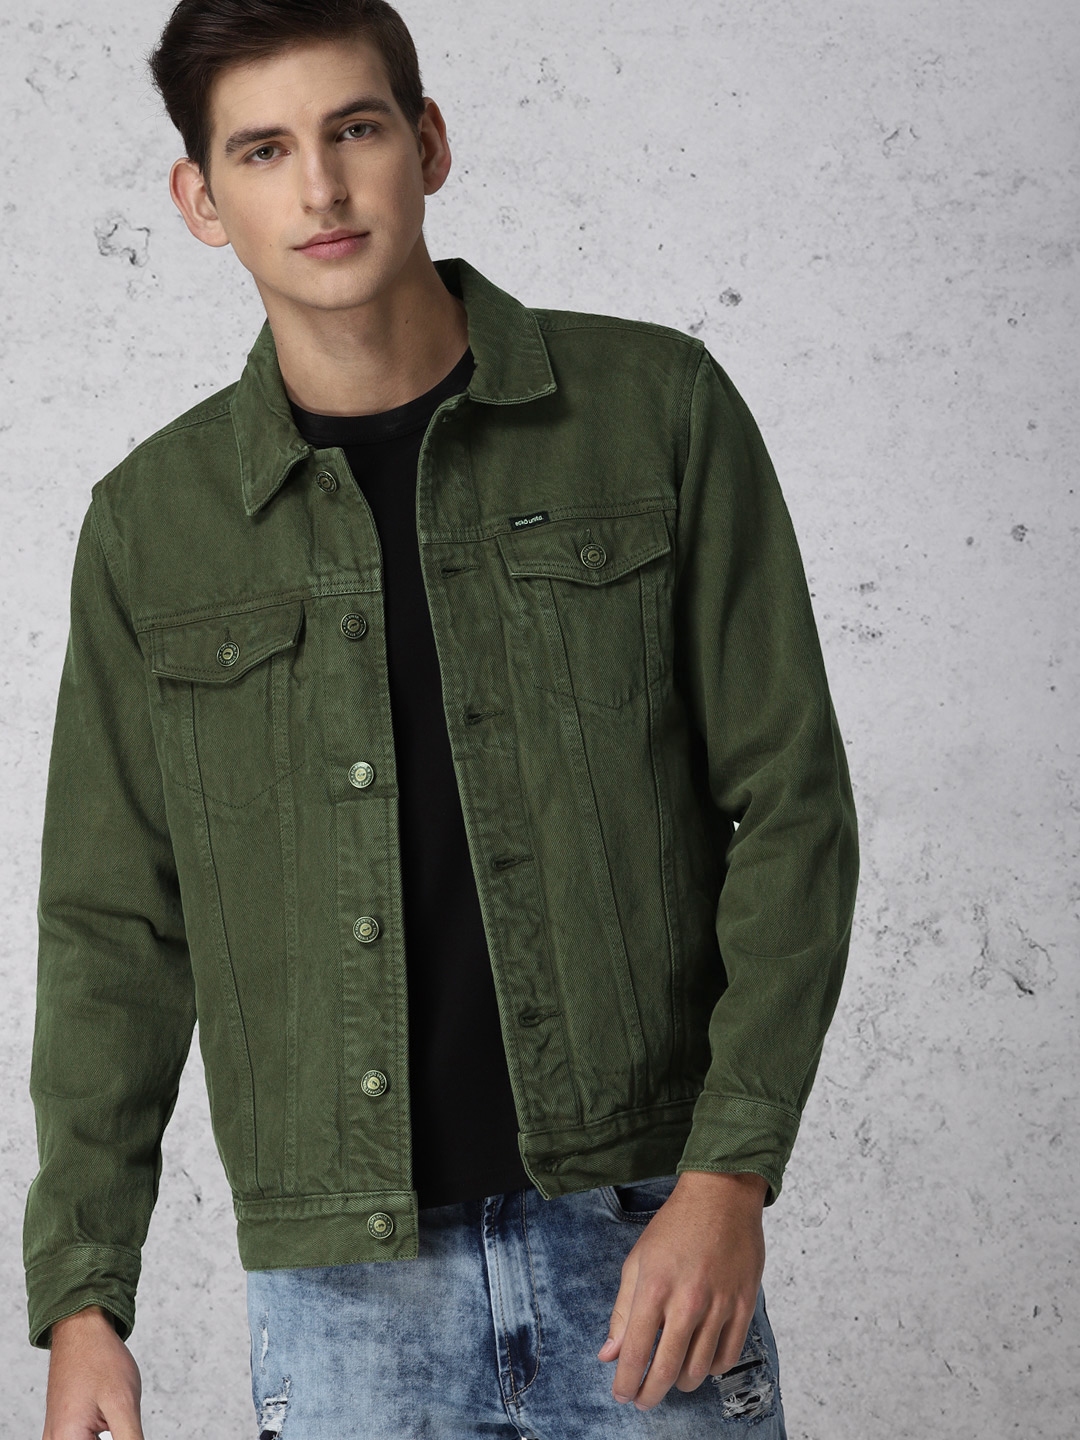 Buy Olive Green Jackets & Coats for Men by ECKO UNLTD Online